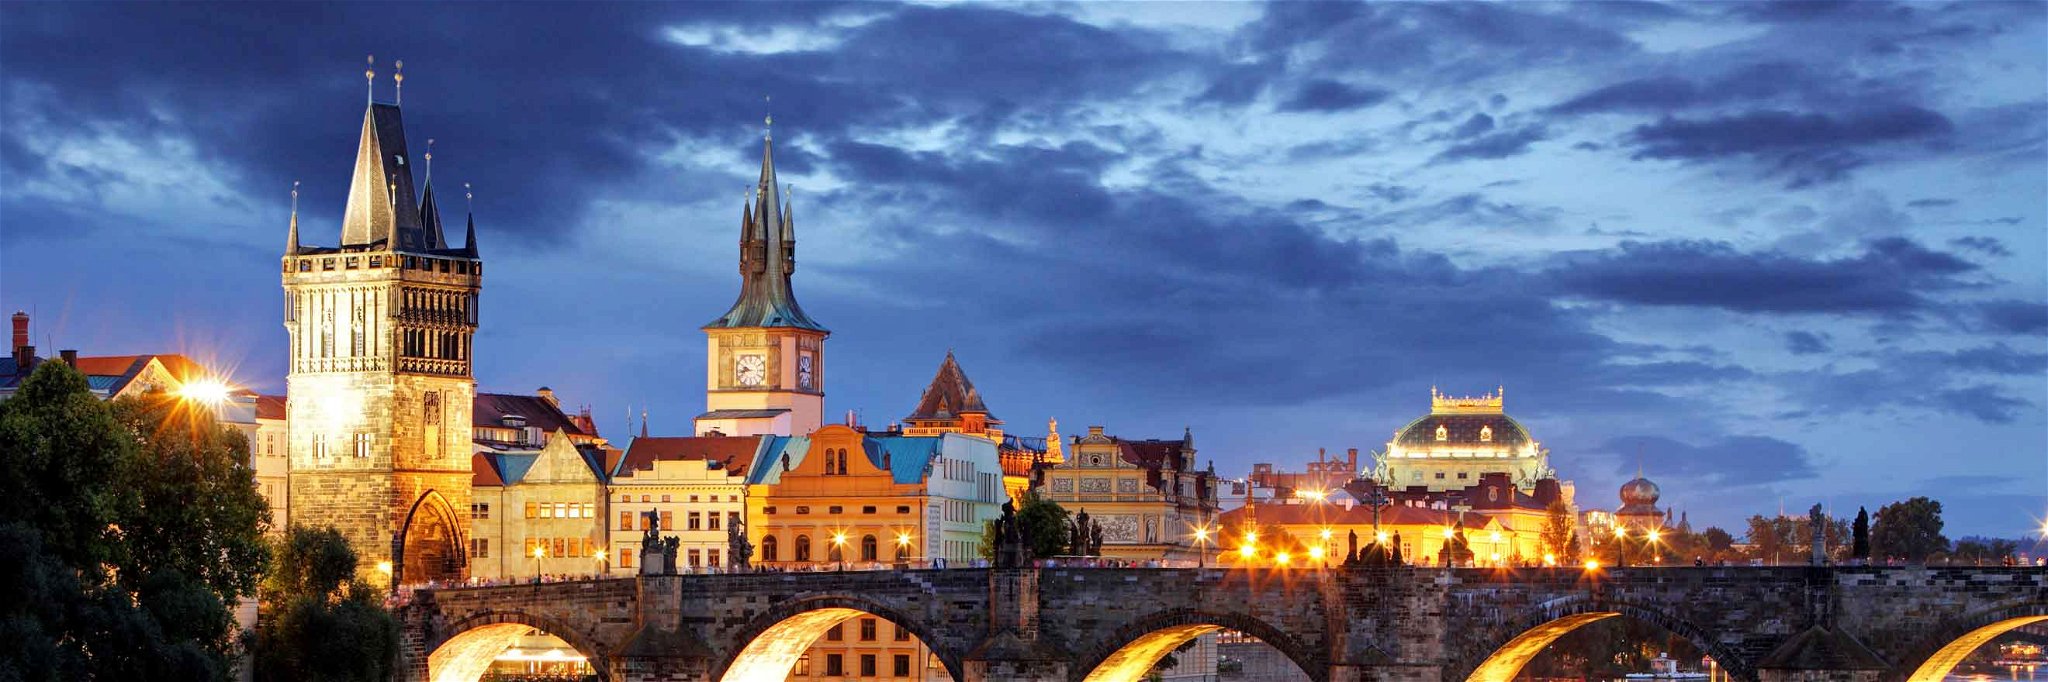 Die Kulturstadt Prag bei Nacht